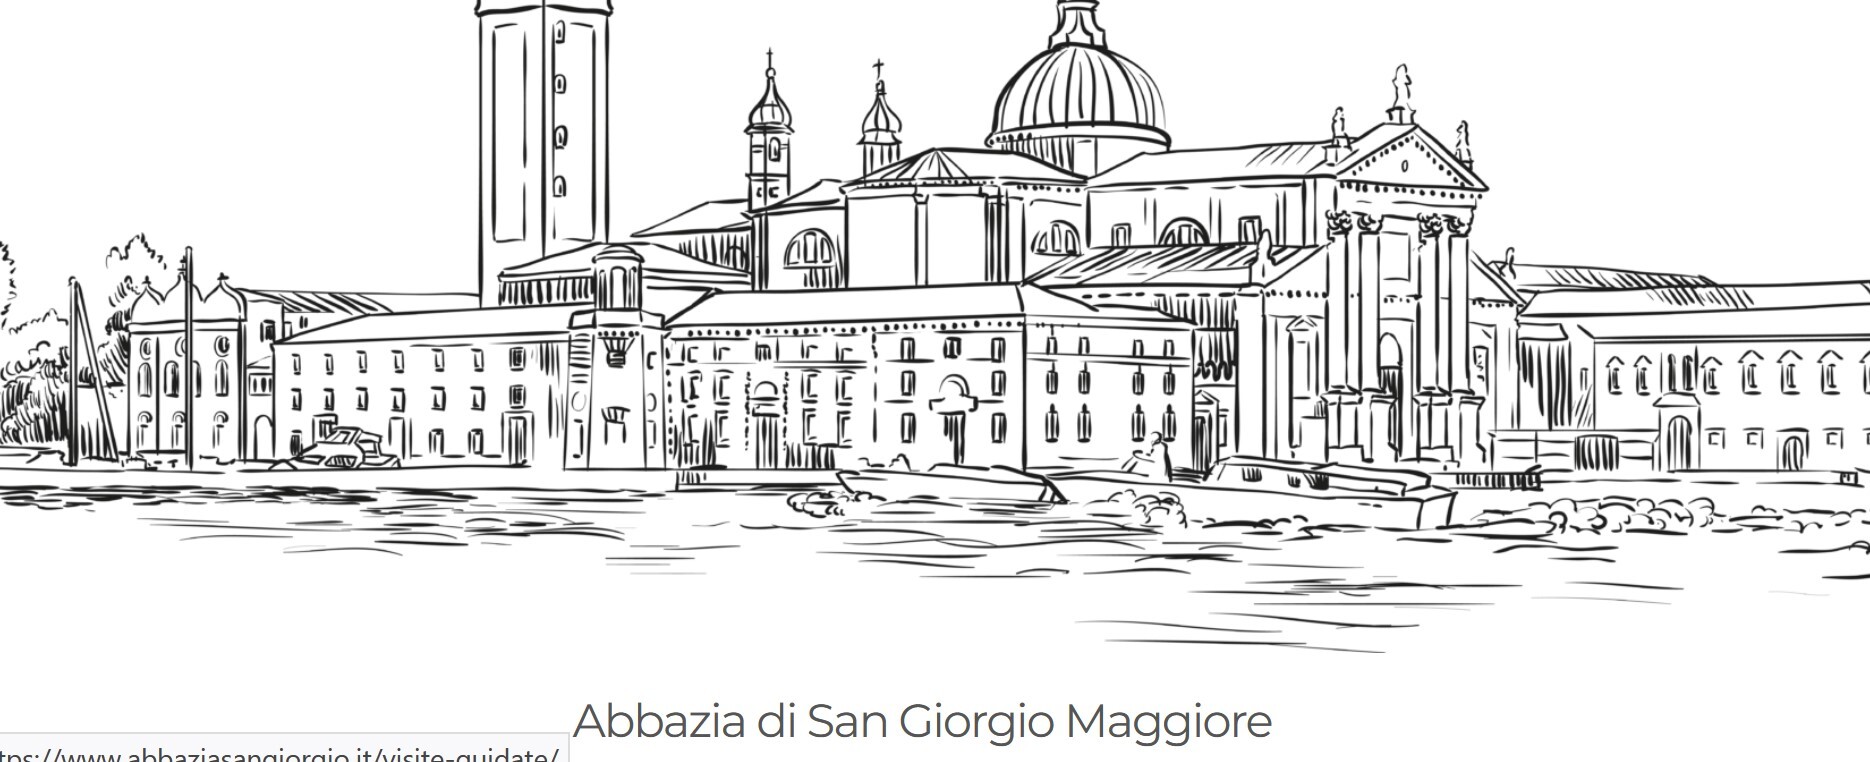 BERLINDE DE BRUYCKERE all’Abbazia di San Giorgio a Venezia con “ City of Refuge III”